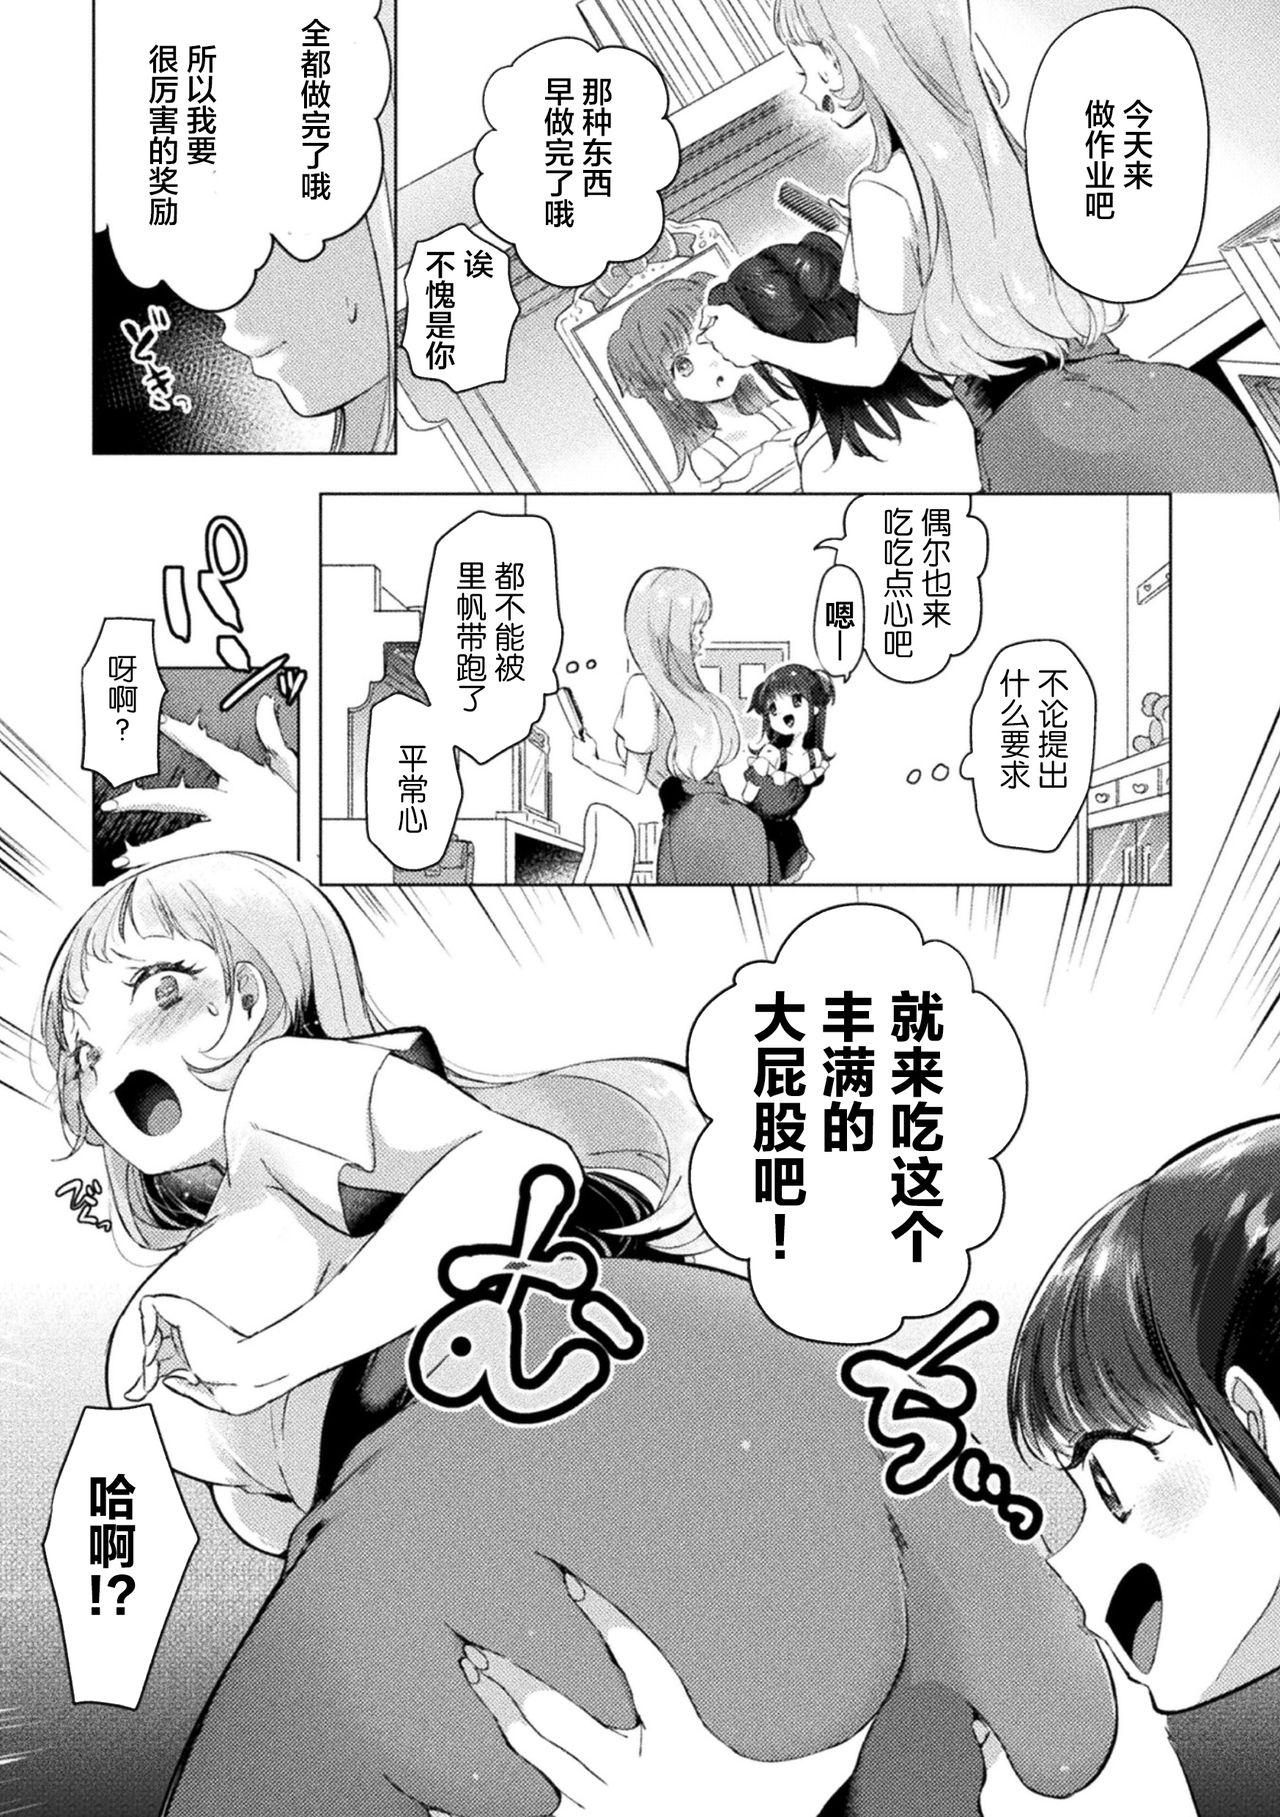 2D Comic Magazine Mesugaki vs Yasashii Onee-san Vol. 1 38